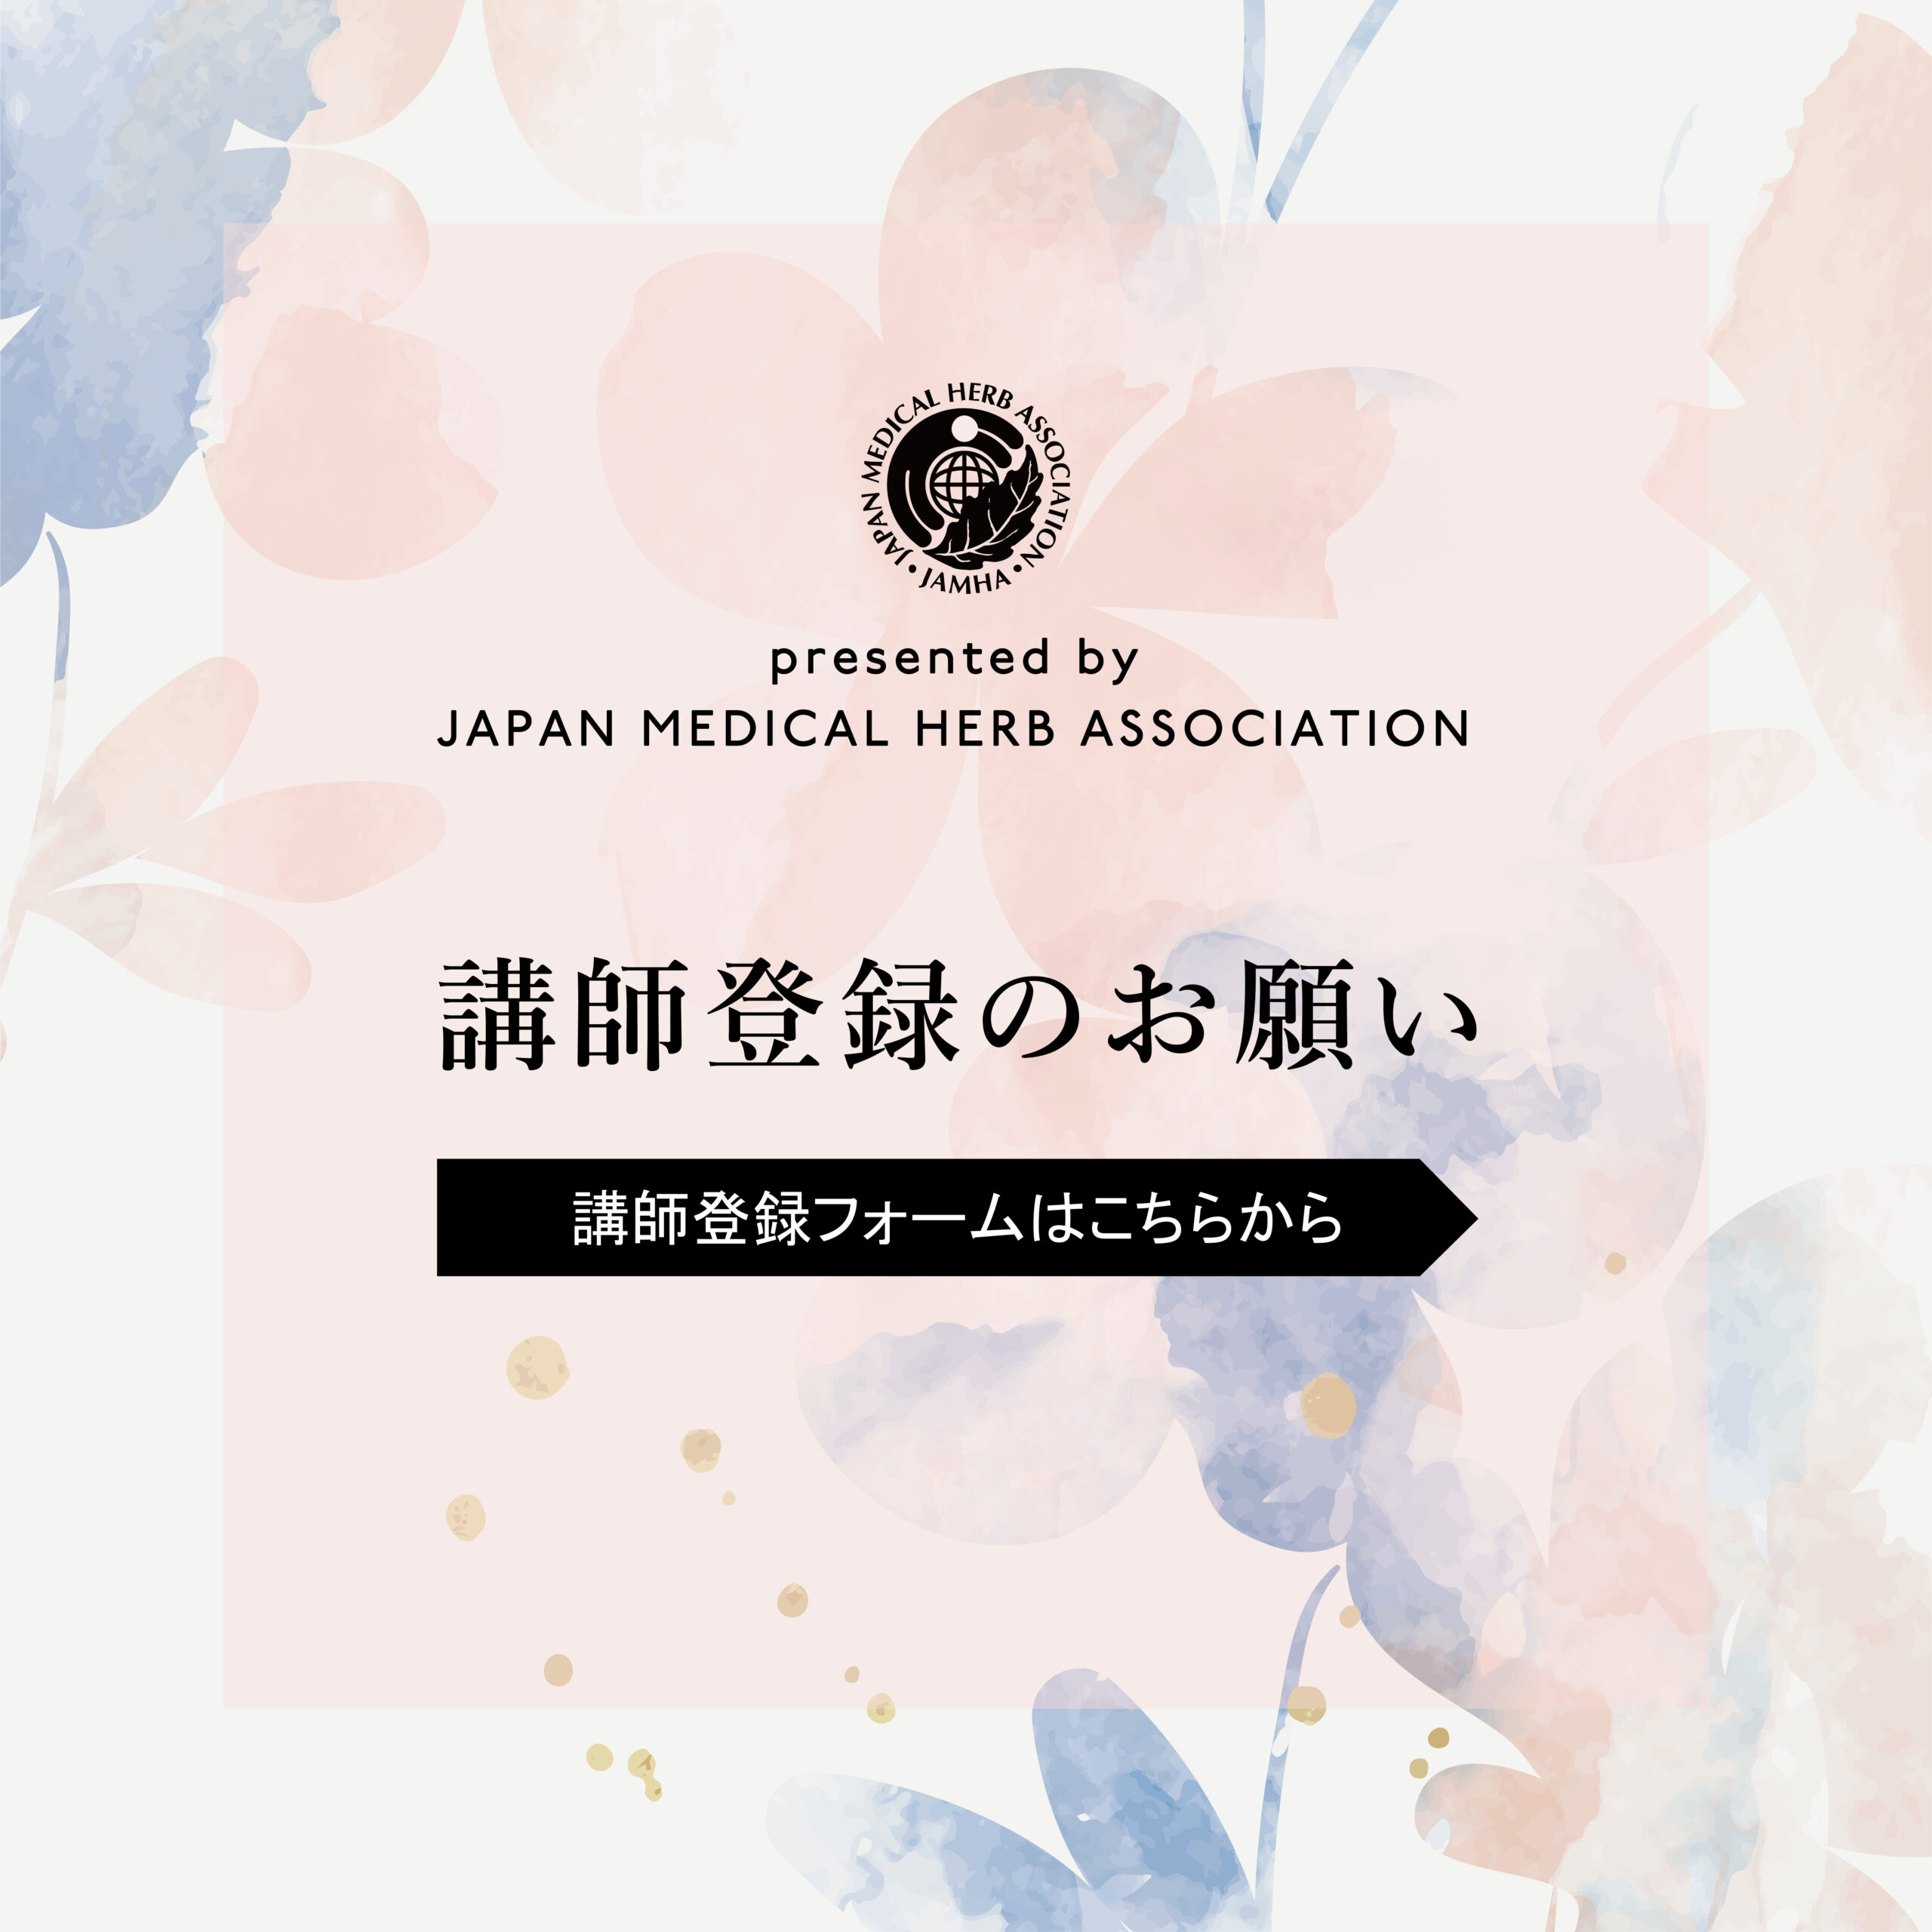 事務局からのお知らせ – 日本メディカルハーブ協会